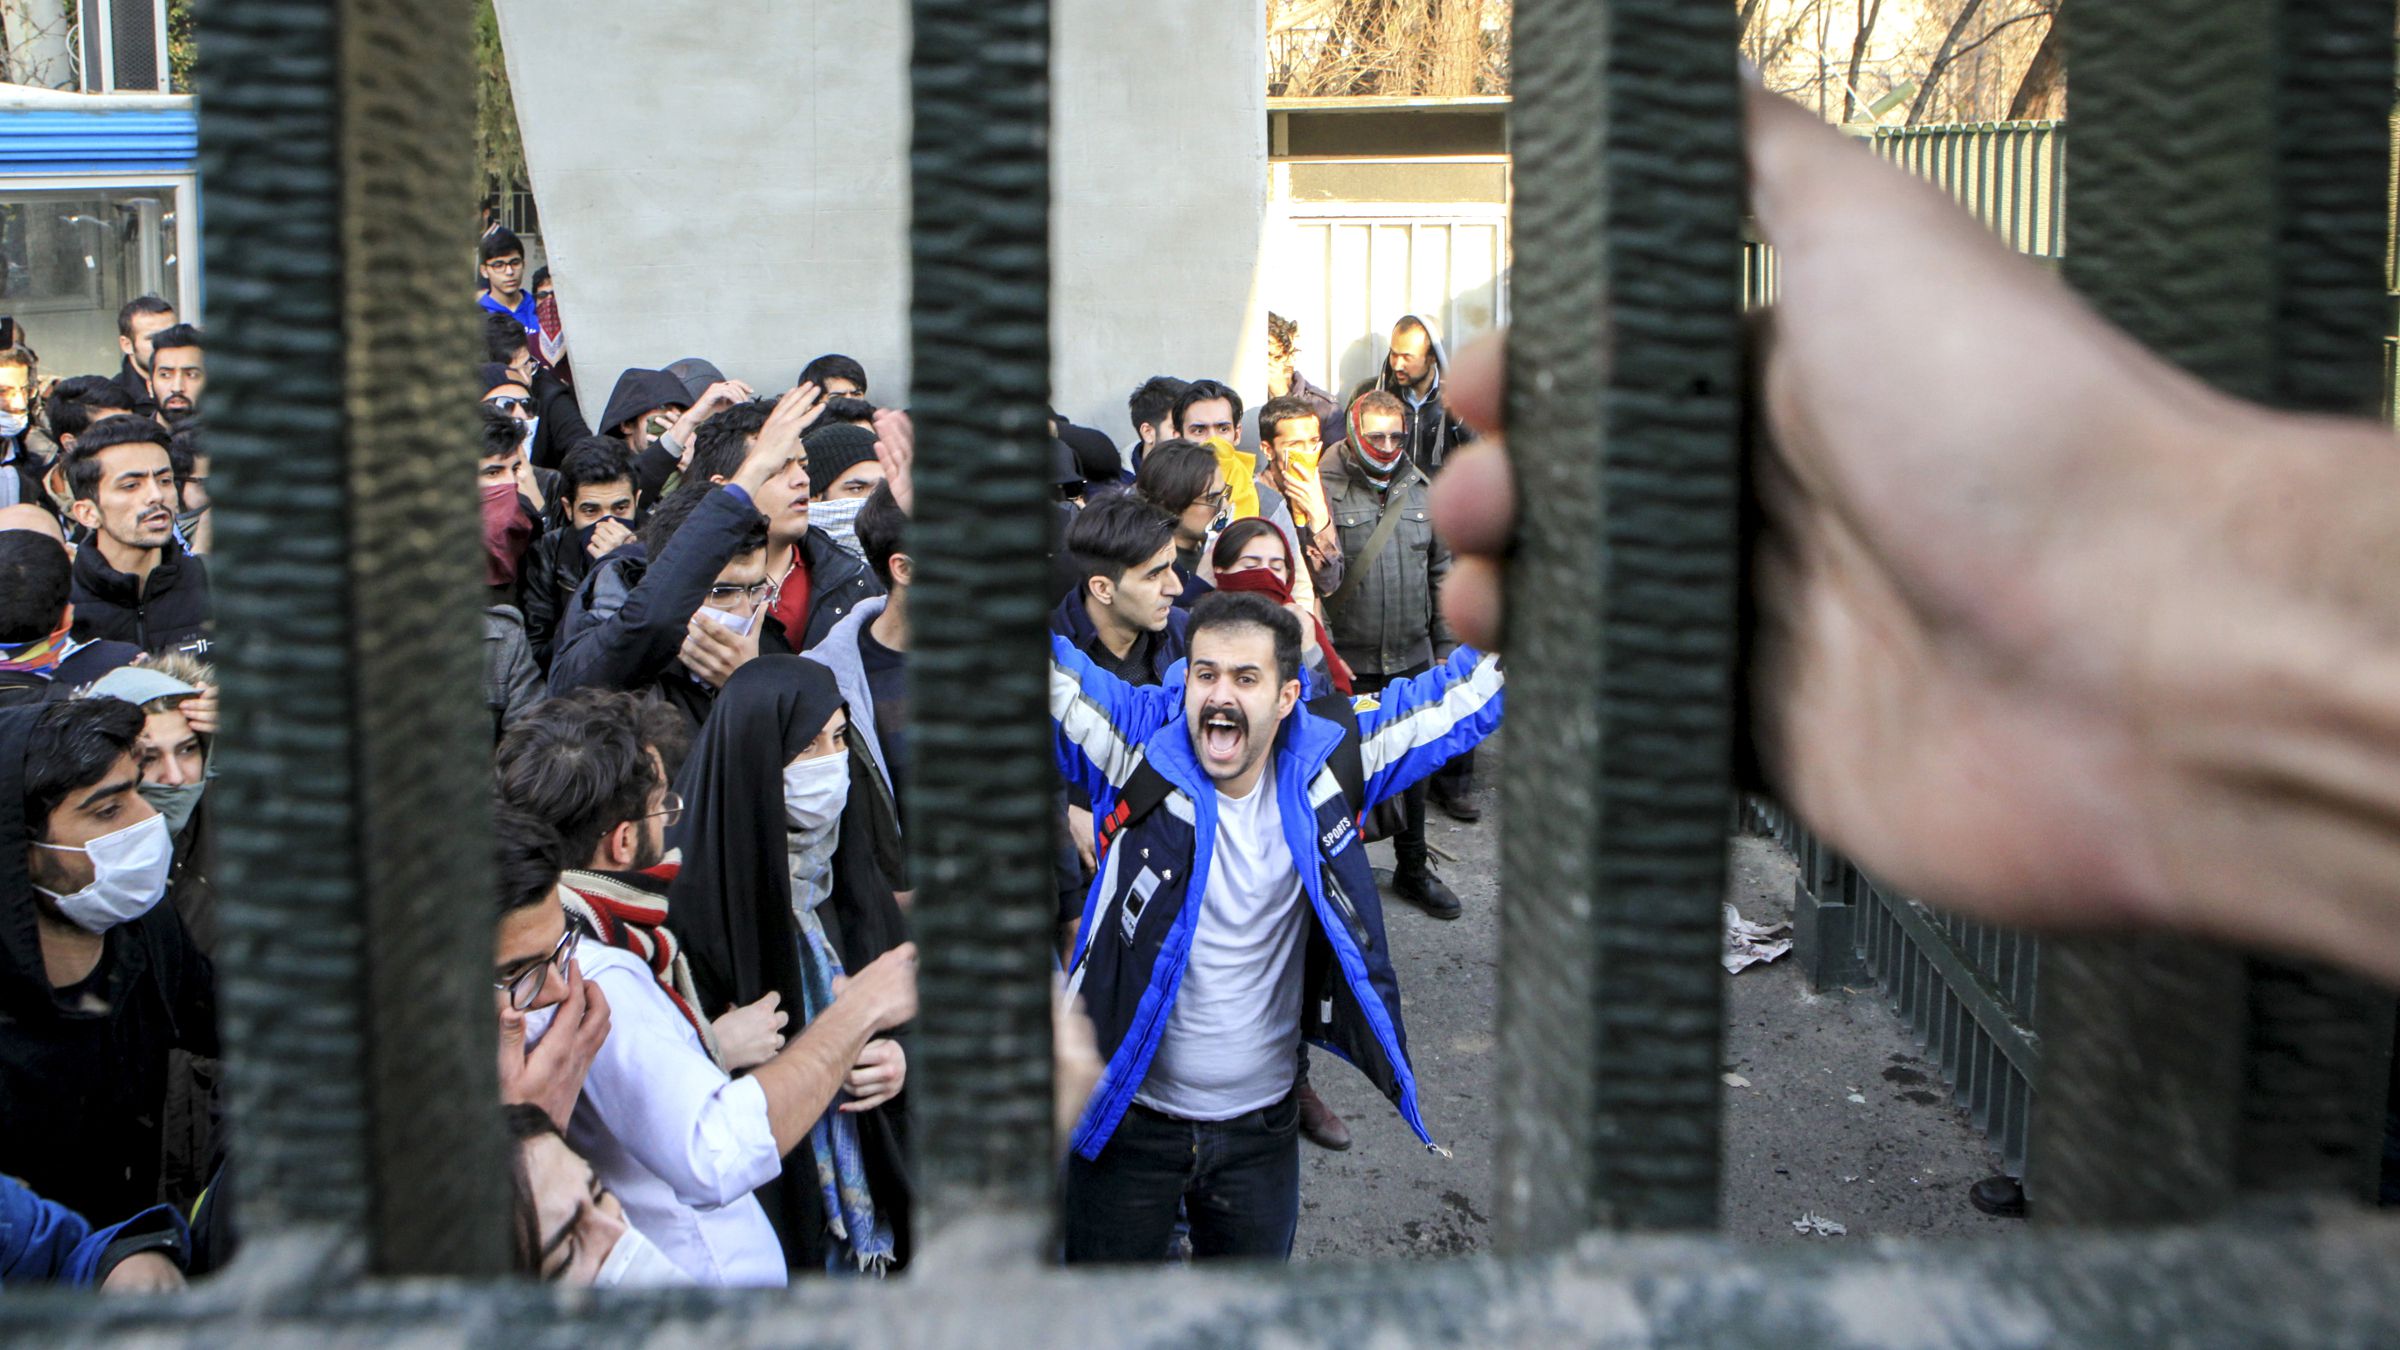 لدى المتظاهرون الإيرانيون شعورًا بالإحباط لزيادة الفقر والبطالة انتشار الفساد (أسوشيتد برس)